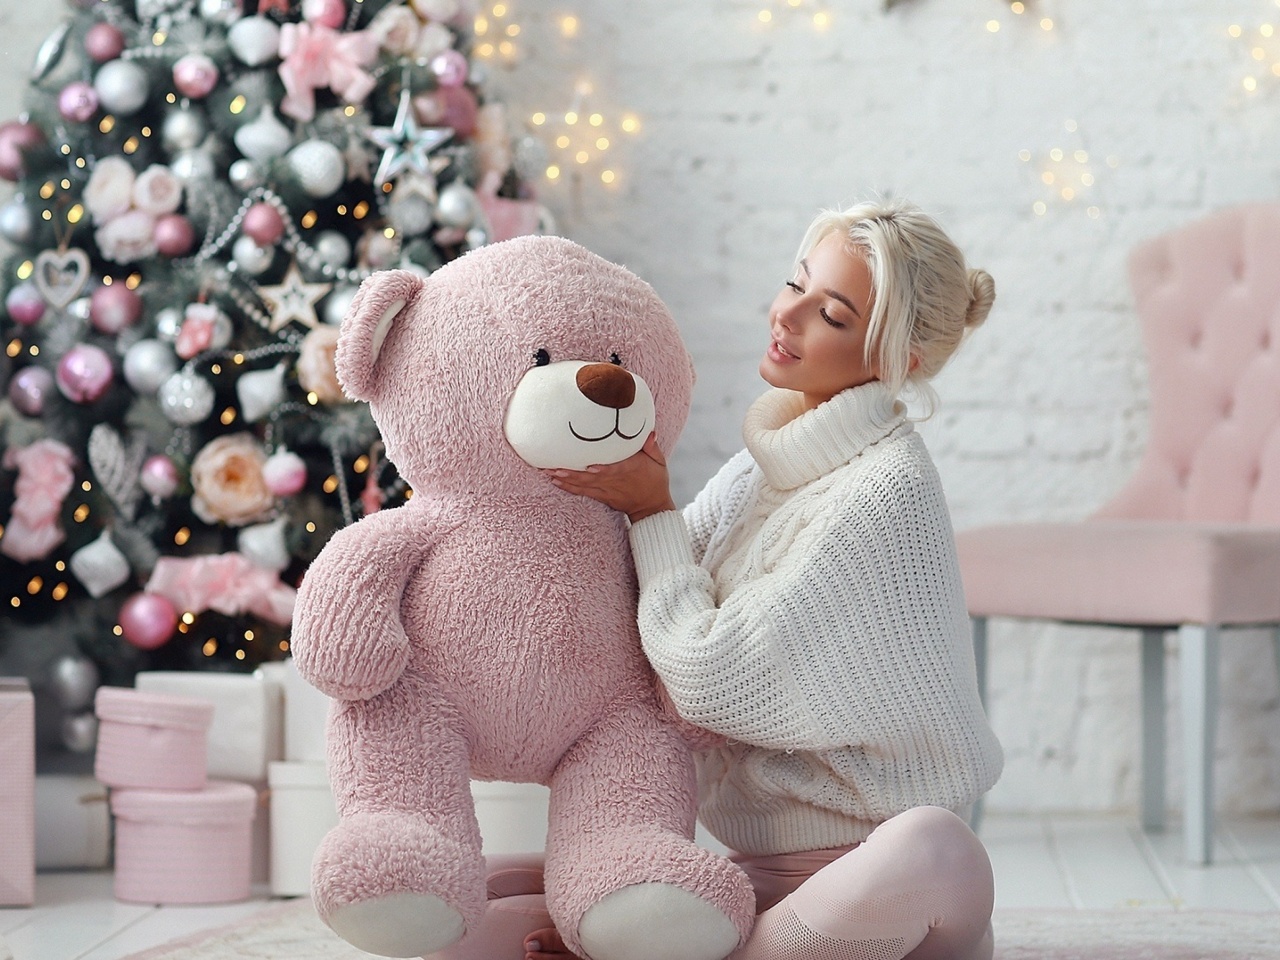 Обои Christmas photo session with bear 1280x960